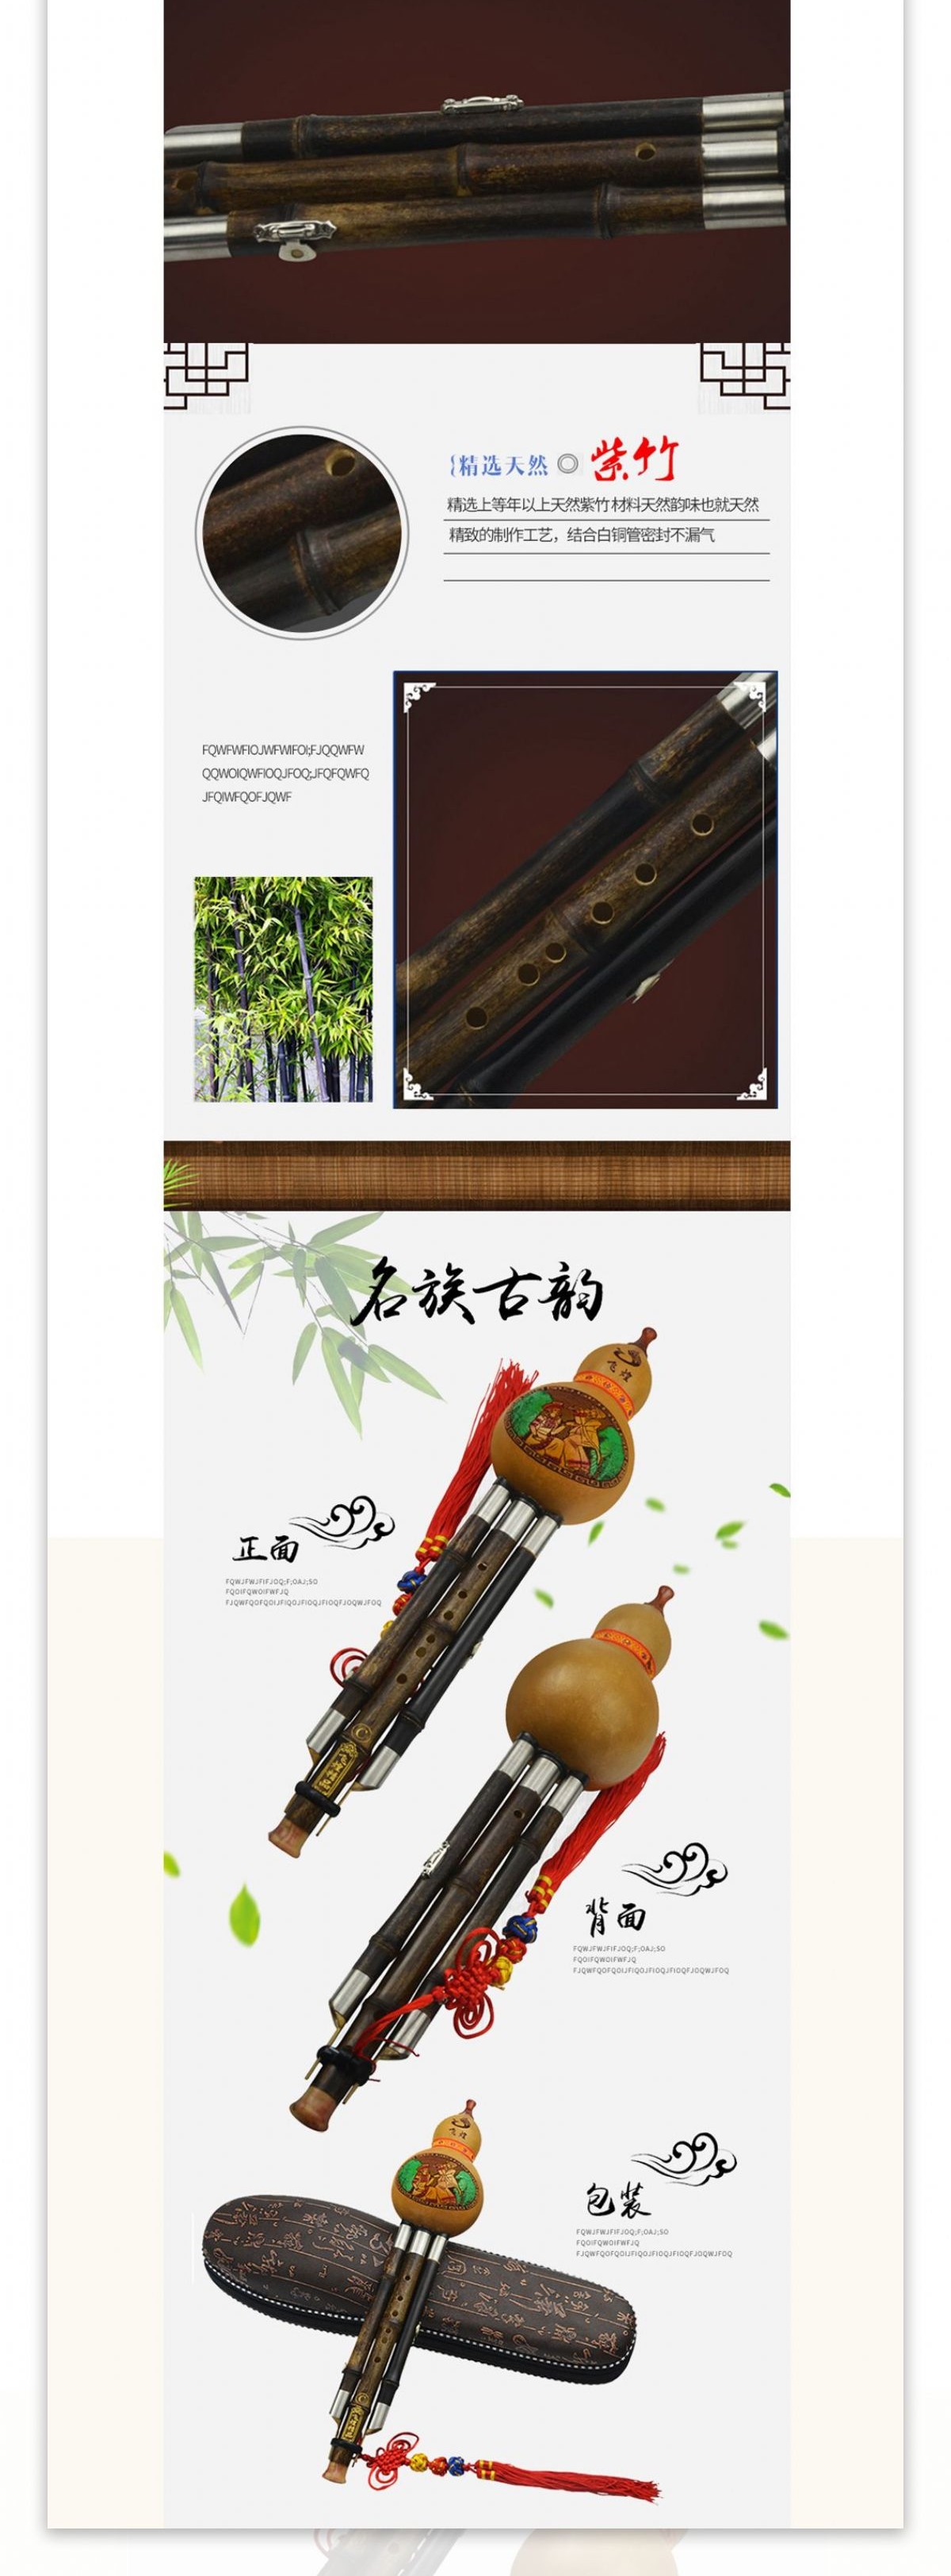 民族乐器葫芦丝详情页模板